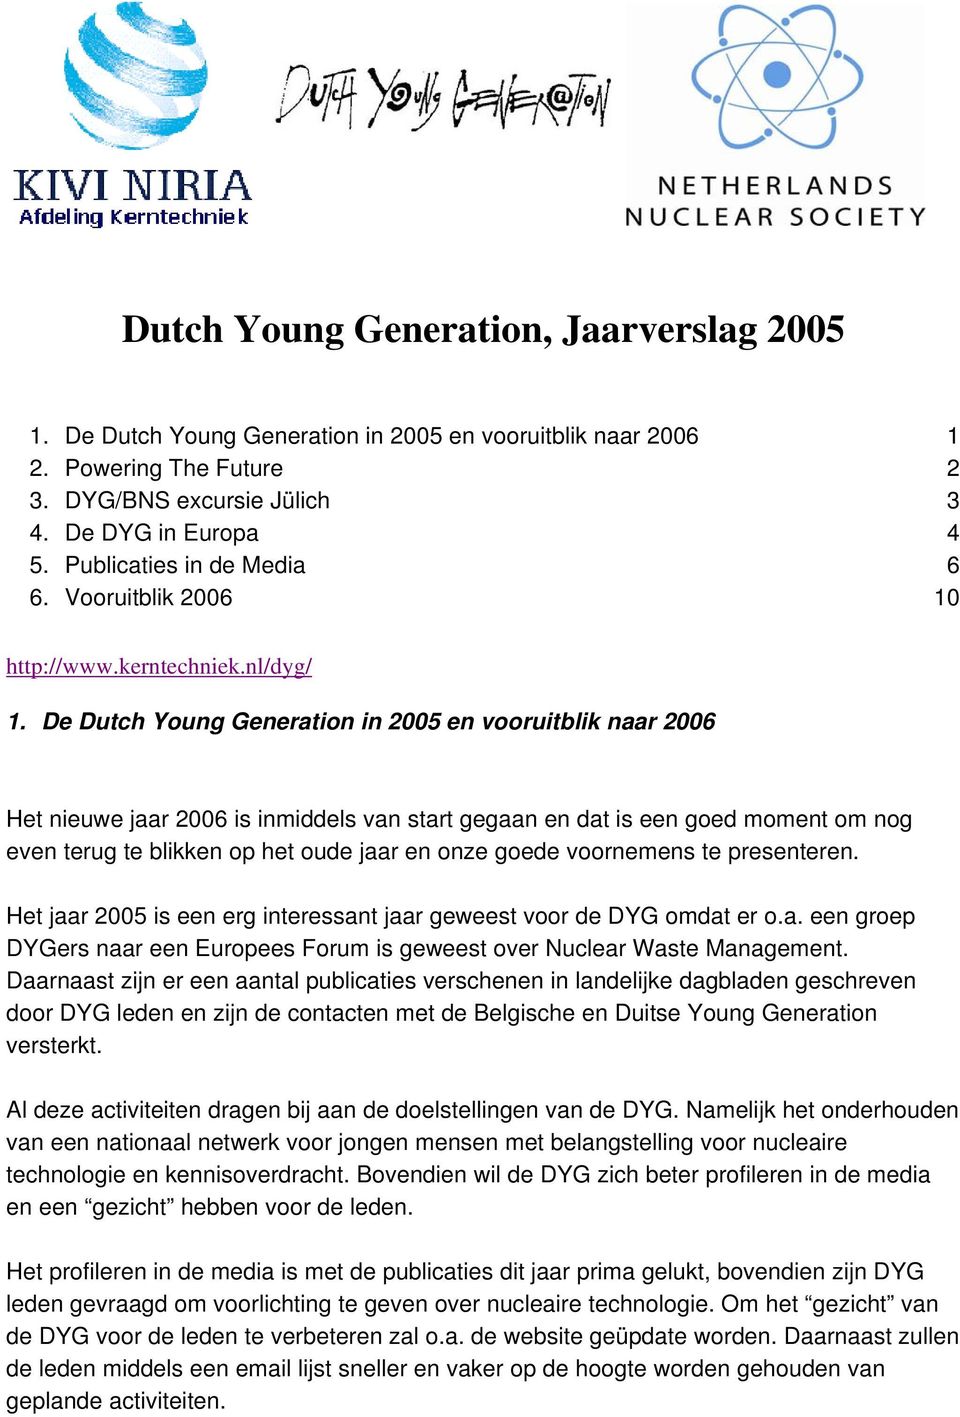 De Dutch Young Generation in 2005 en vooruitblik naar 2006 Het nieuwe jaar 2006 is inmiddels van start gegaan en dat is een goed moment om nog even terug te blikken op het oude jaar en onze goede